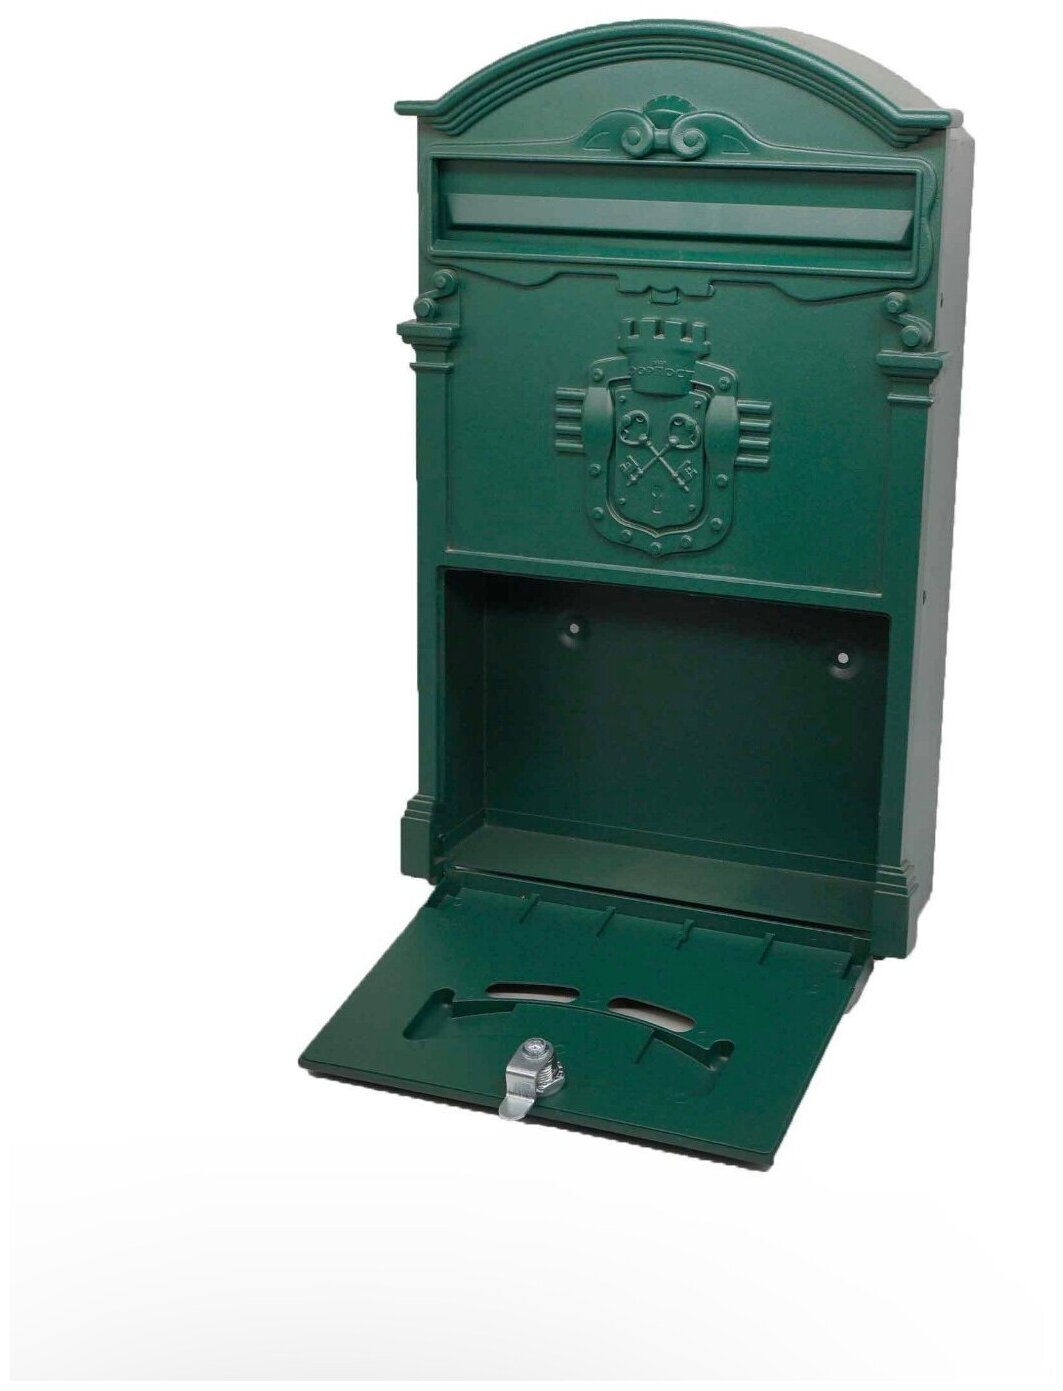 Почтовый ящик "Ключики" цвет: зеленый/ почтовый ящик металлический/ почтовый ящик с замком/ ящик почтовый/ почтовый ящик с замком уличный - фотография № 2